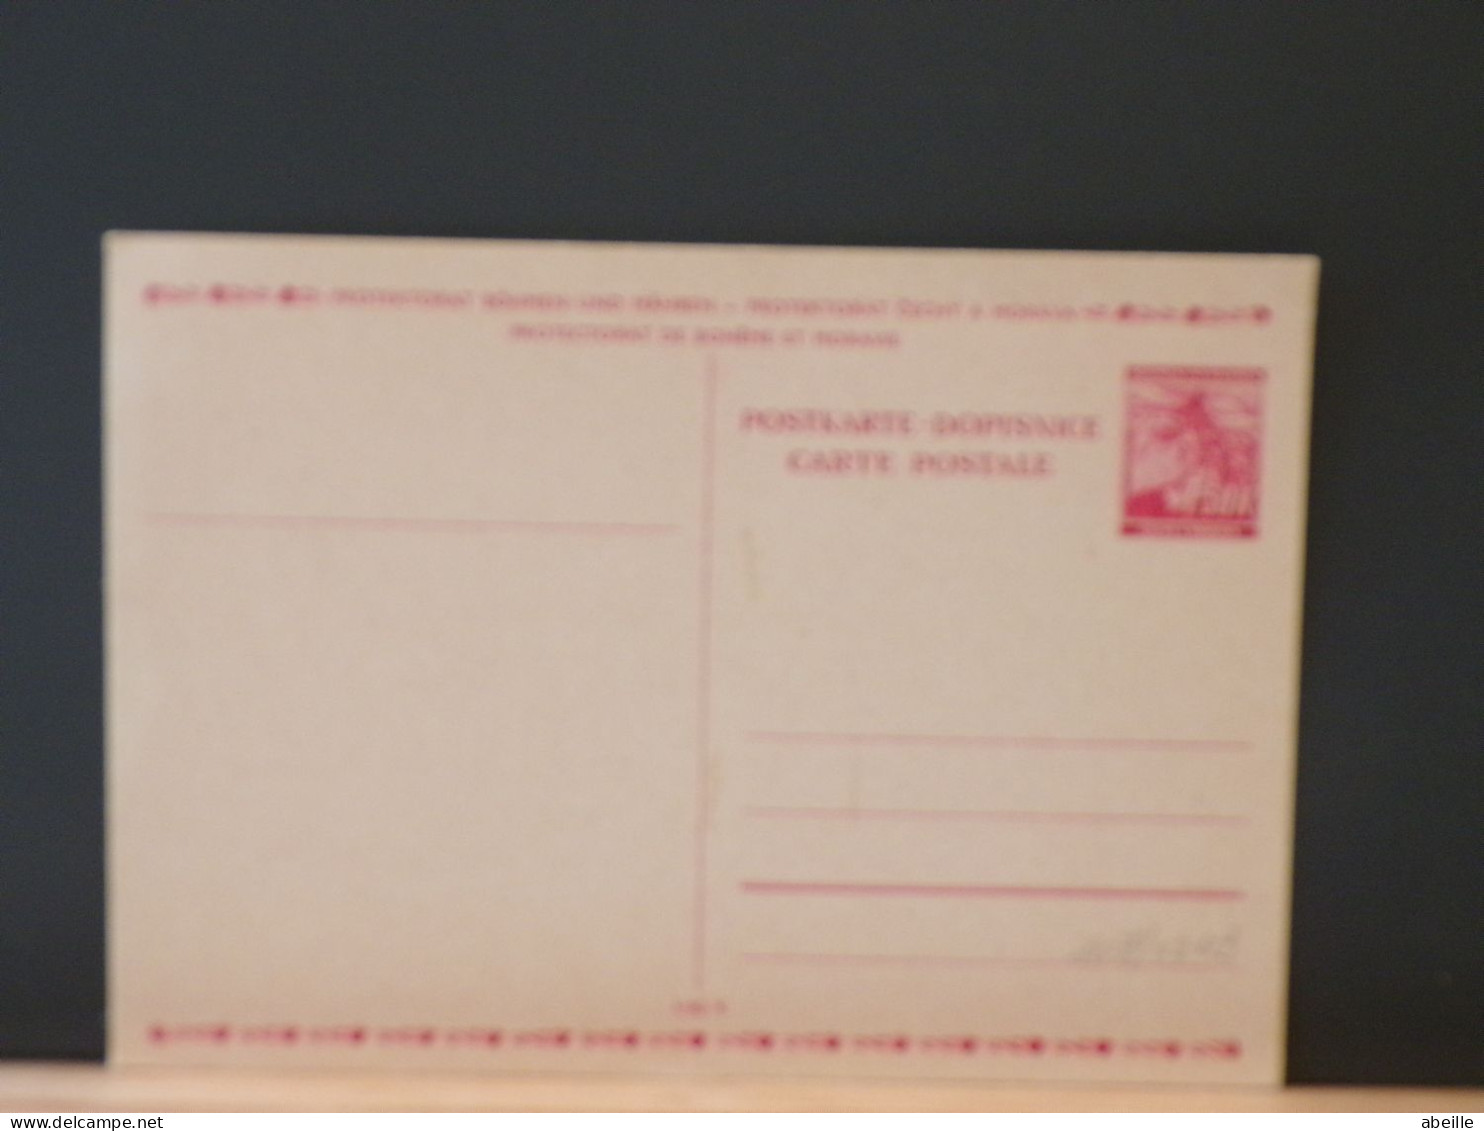 107/021B  CP PROTEKTORAT BIHMEN UND MAHREN  XX - Postcards